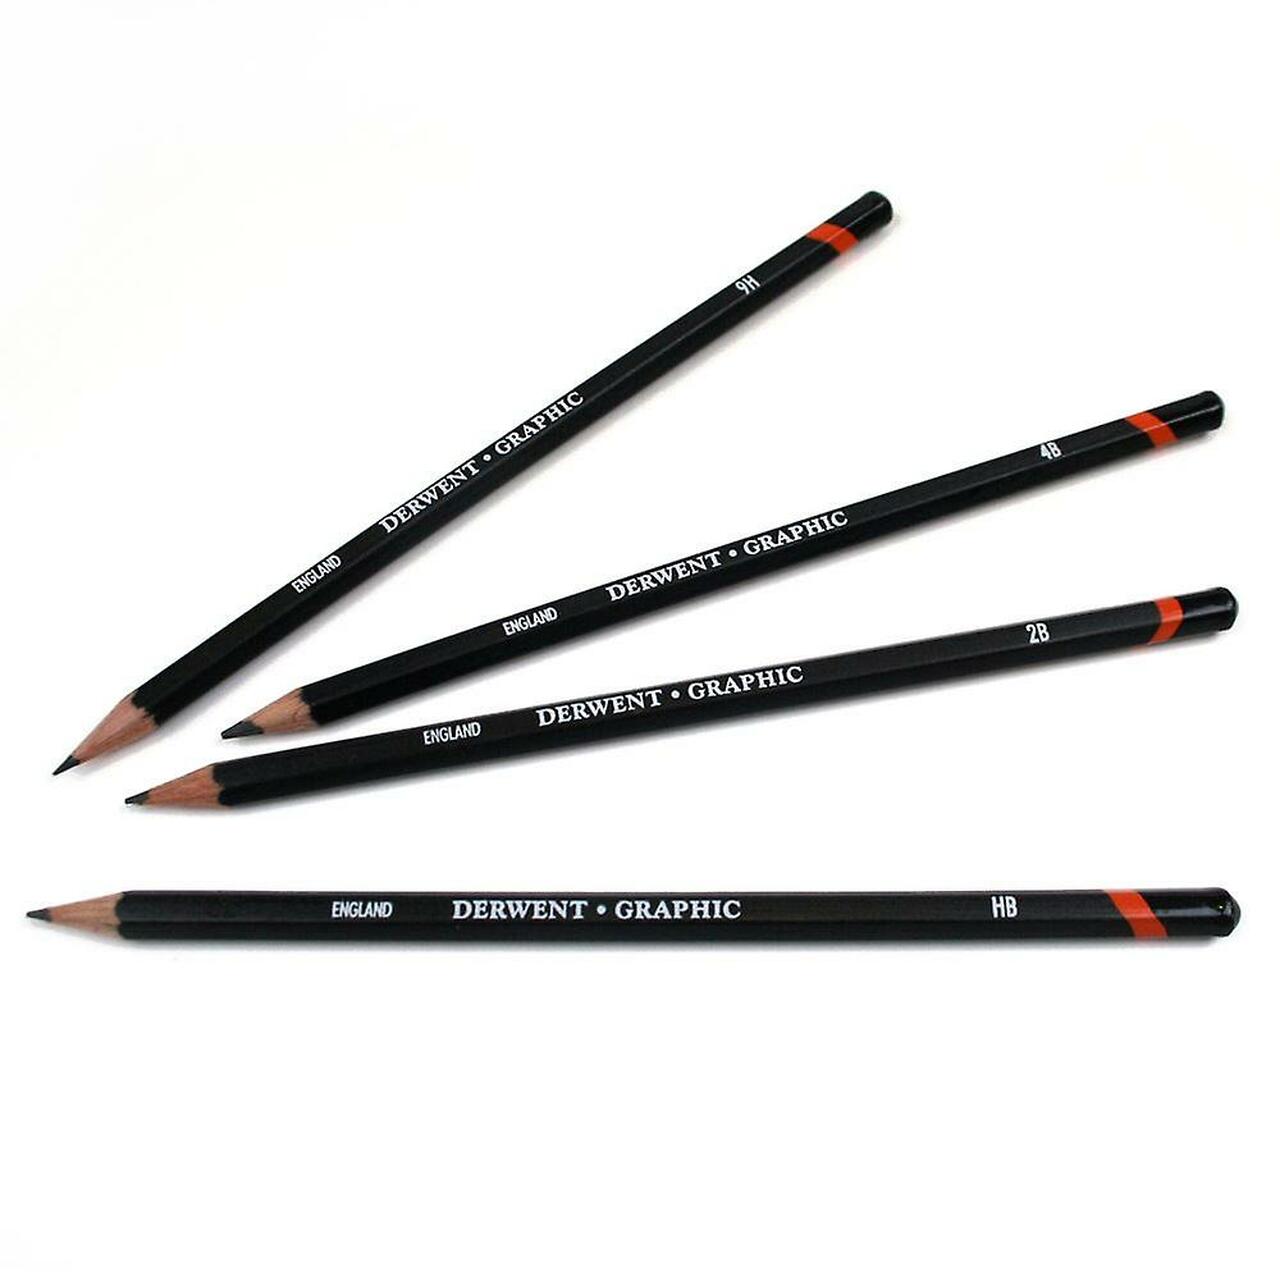 Derwent - Graphic Pencil - 7B